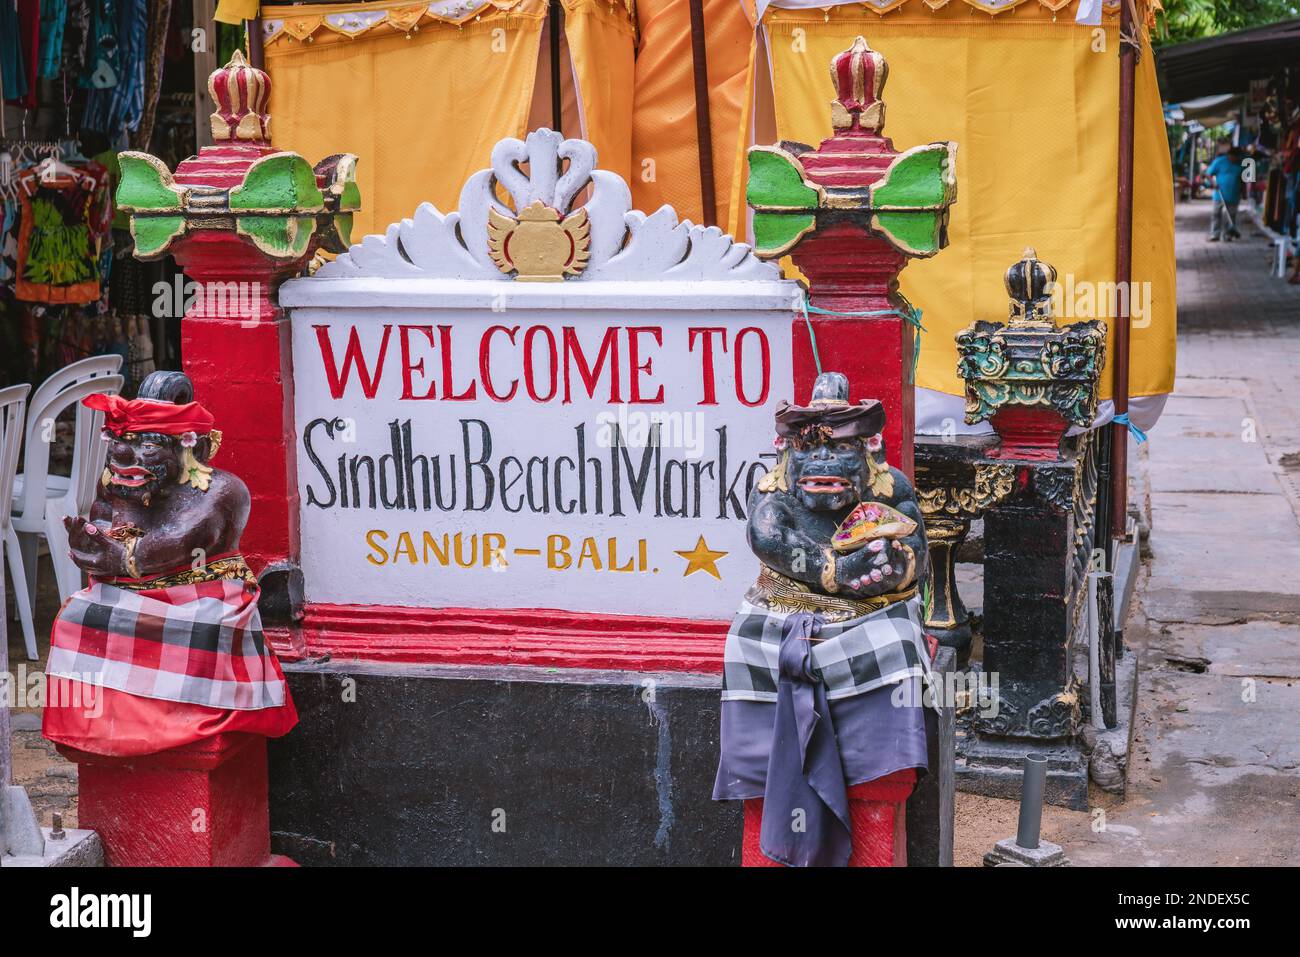 Benvenuti al mercato sulla spiaggia di Sindhu a Sanur Bali, punto d'ingresso con saluto decorato da due statue di guardia demoniaca in stile tradizionale balinese, da vicino Foto Stock